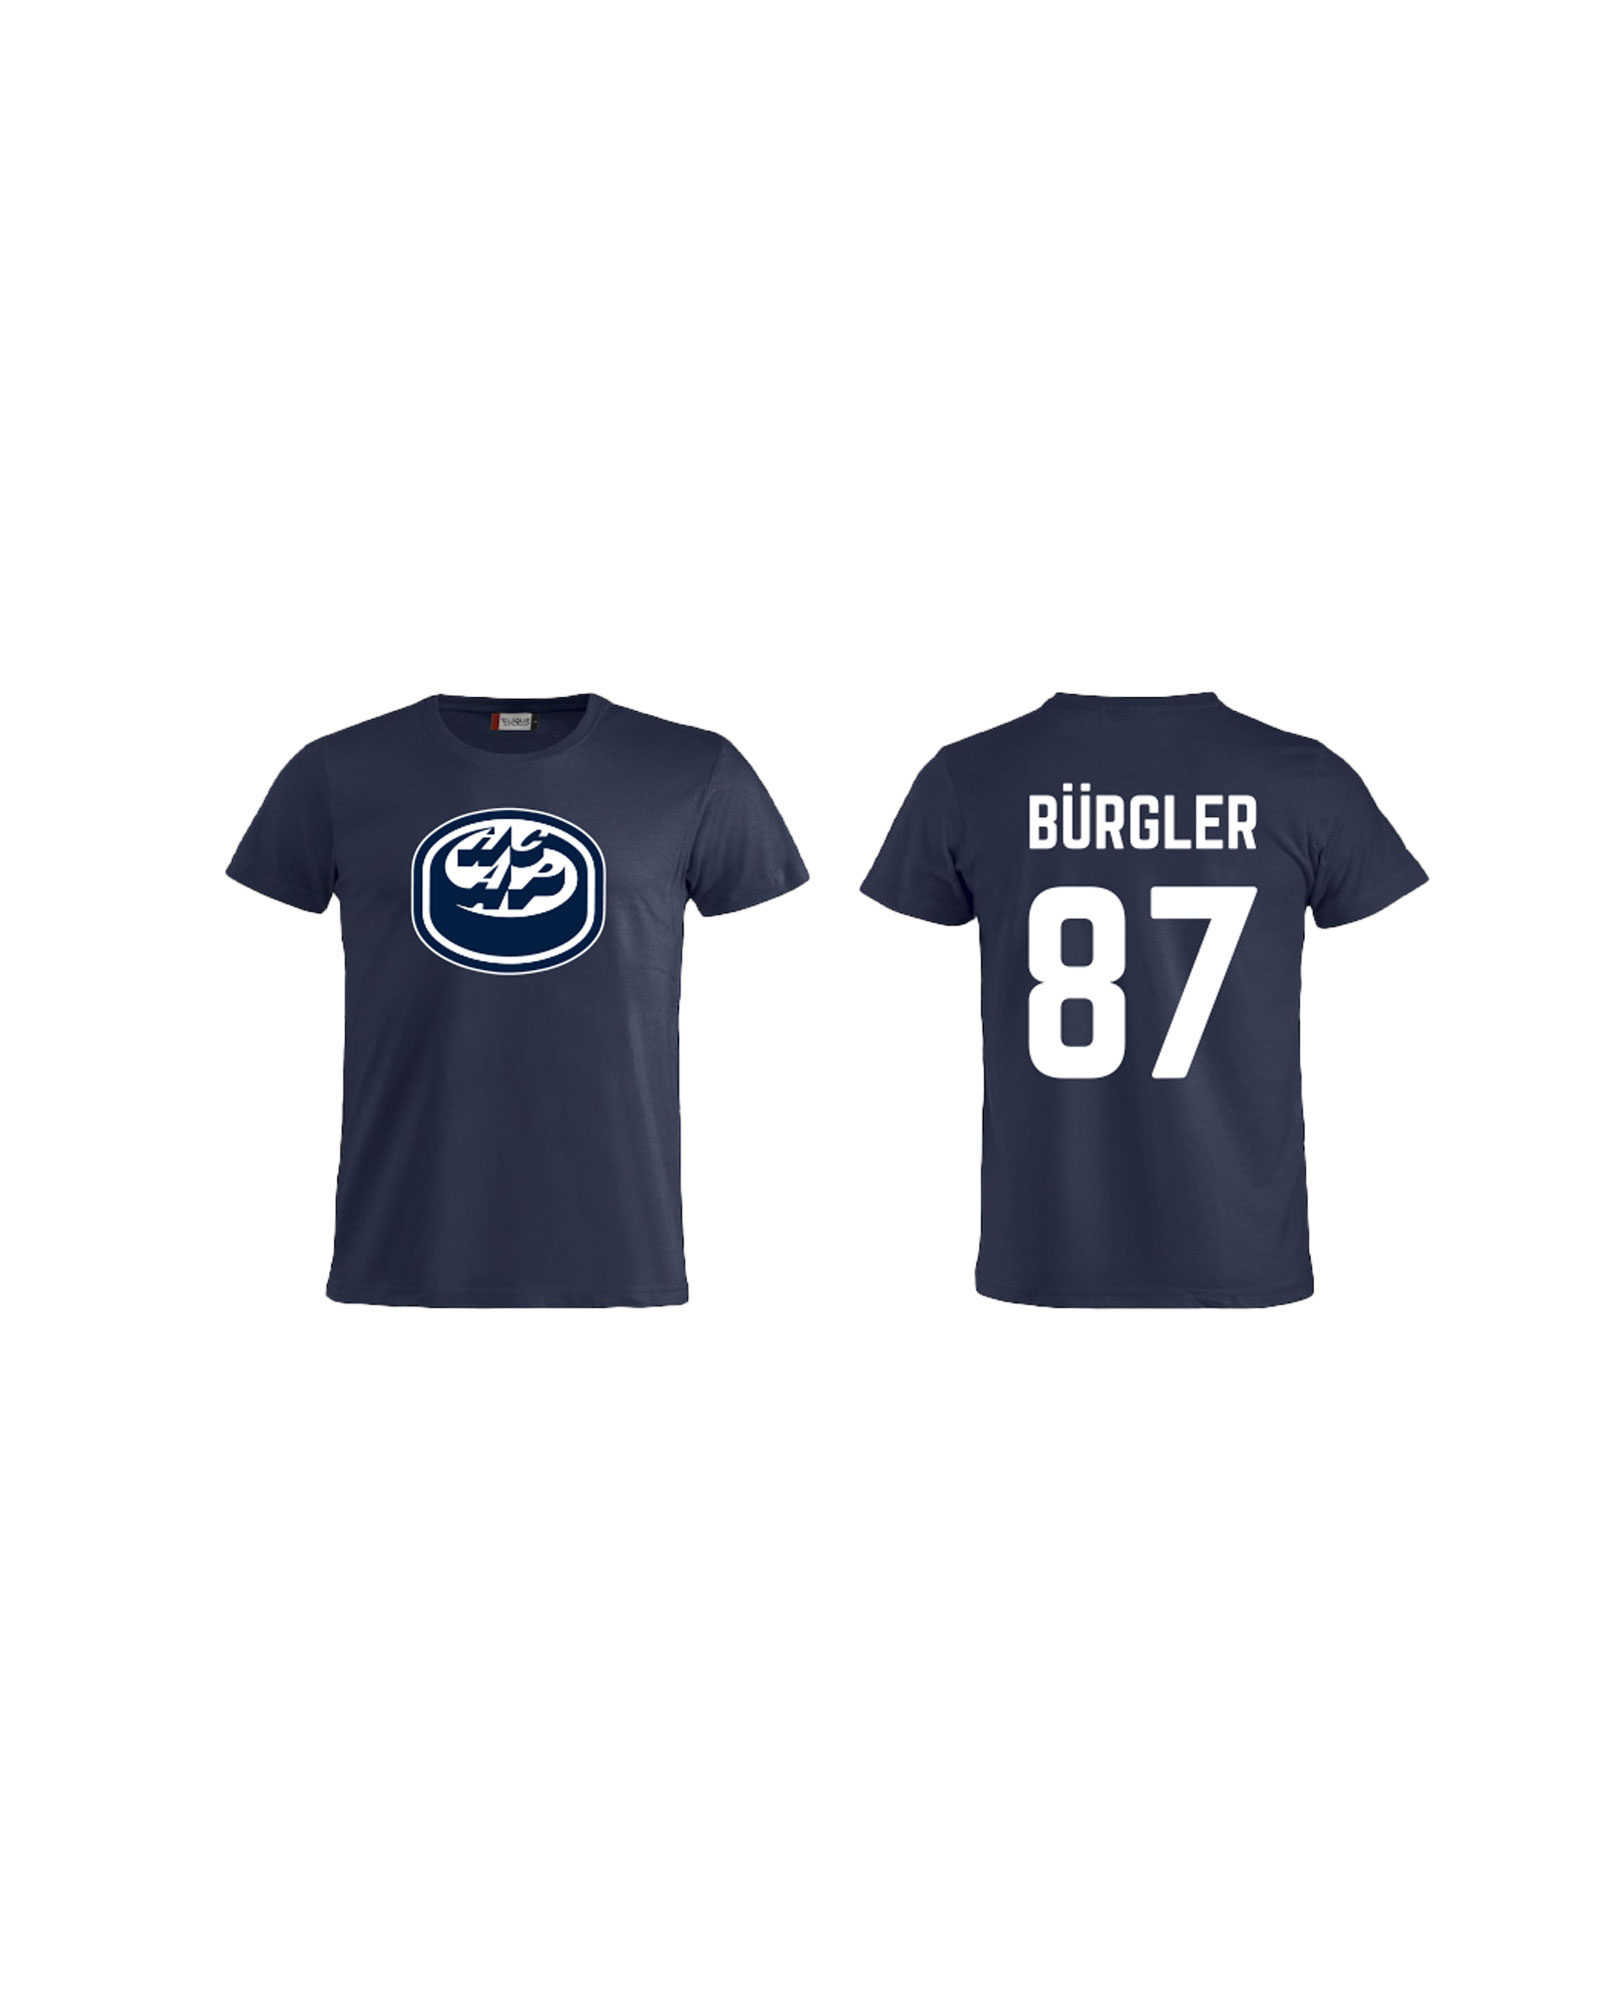 T-shirt #87 Bürgler